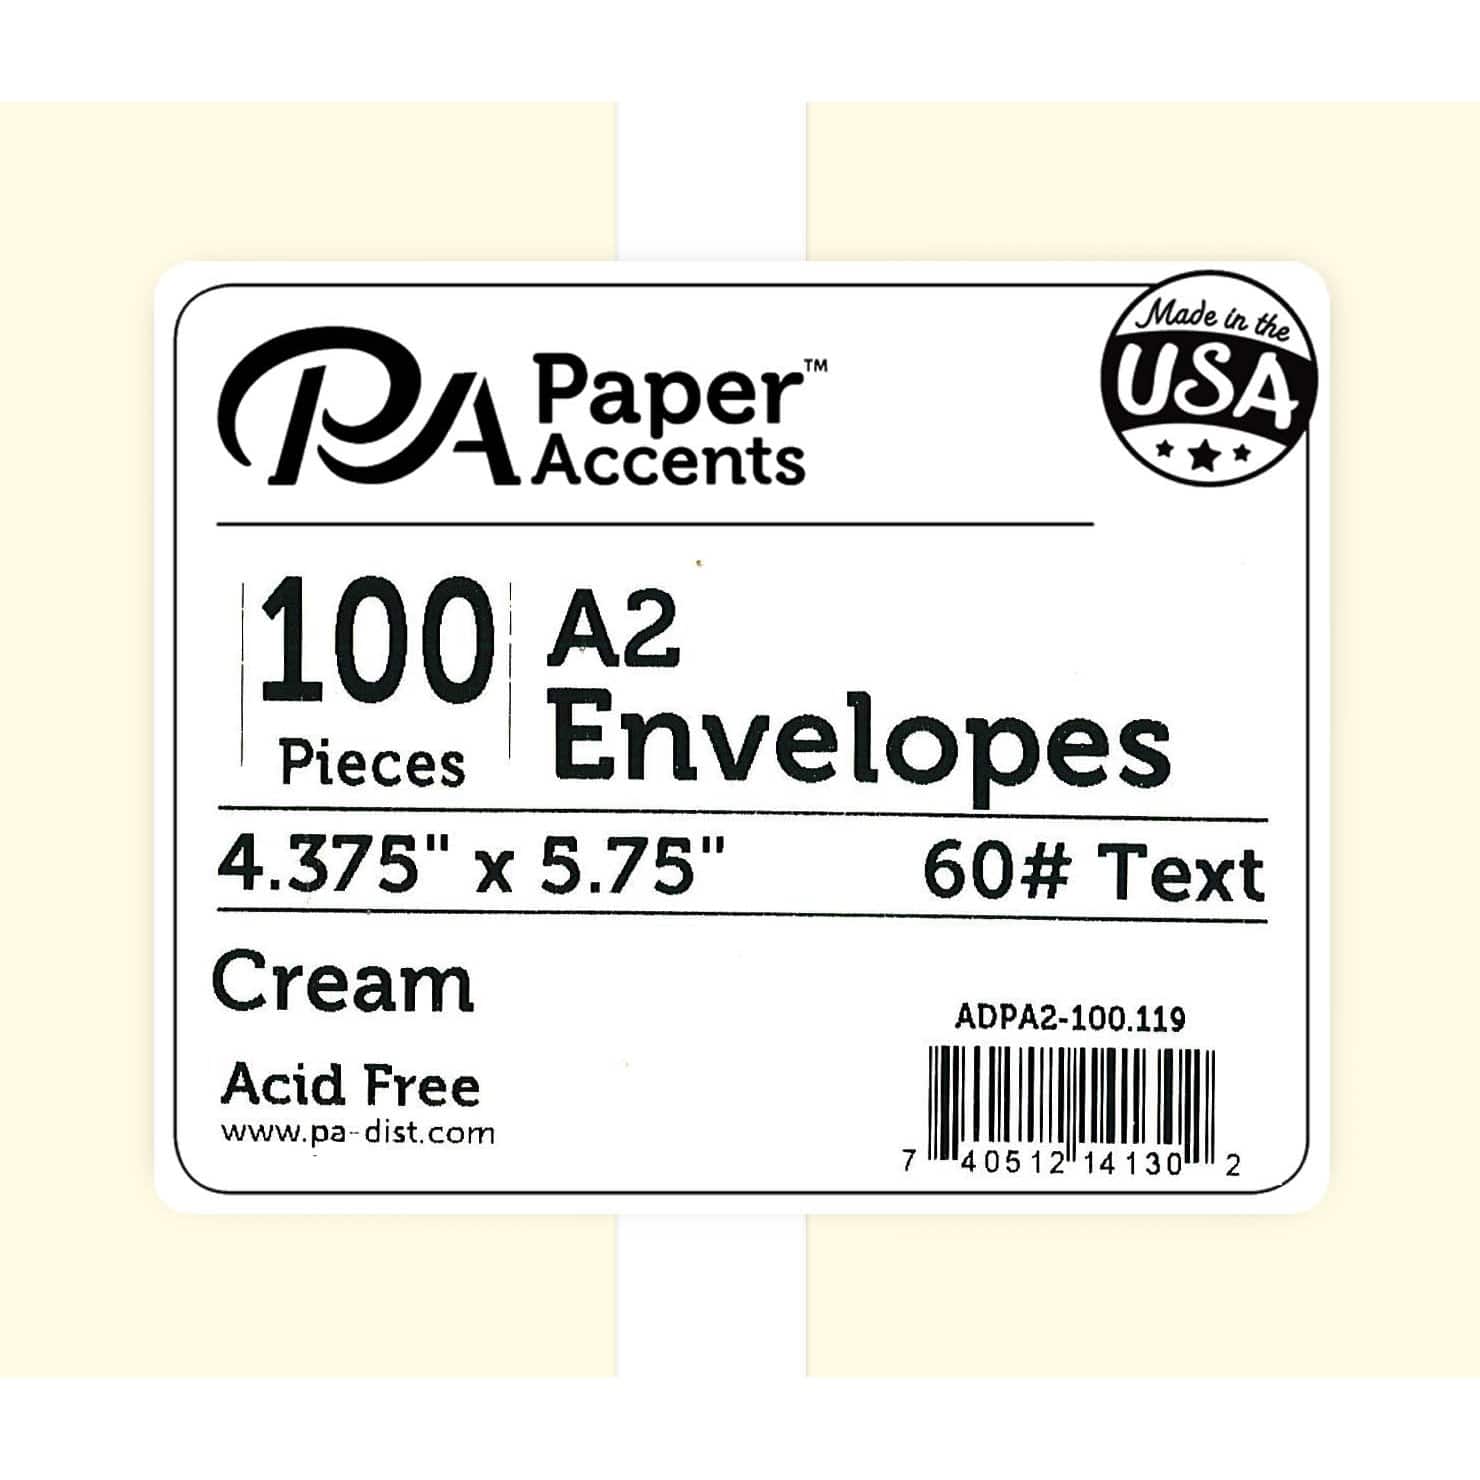 PA Paper™ Accents Envelopes, 4.38" x 5.75"